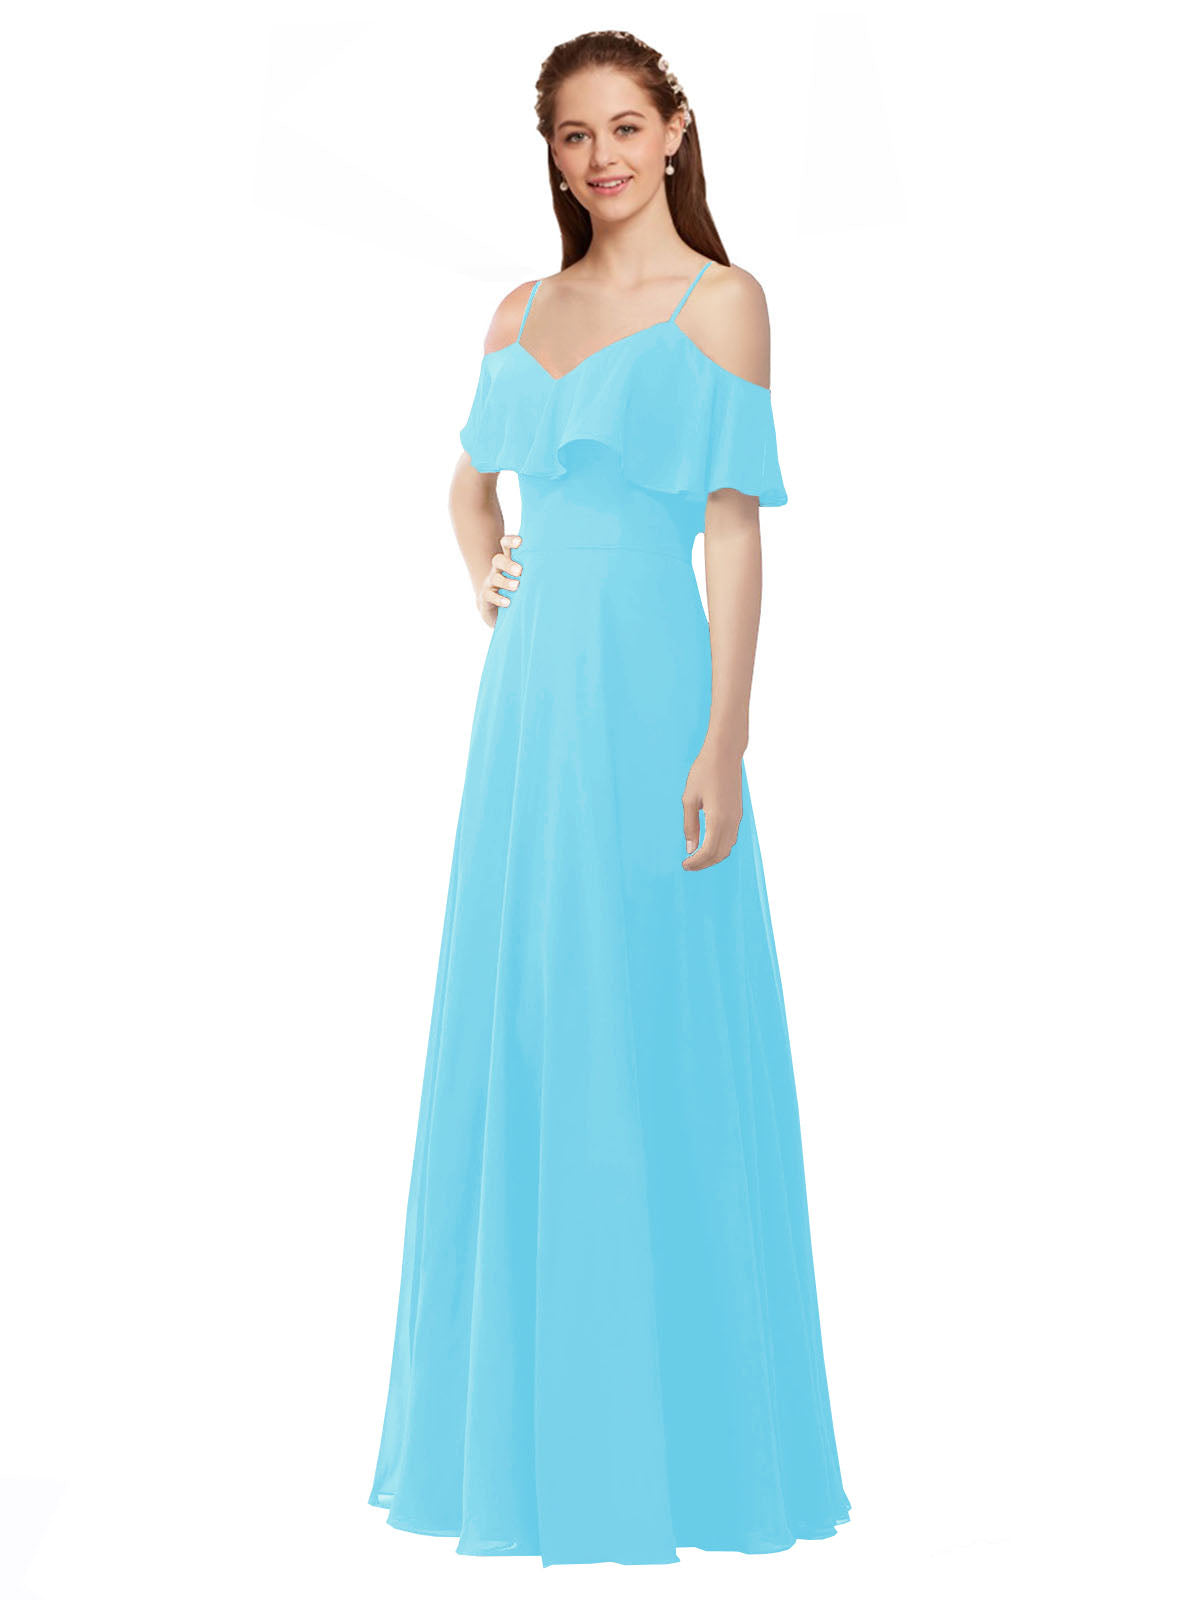 Sky Blue A-Line Off the Shoulder V-Neck Sleeveless Long Bridesmaid Dress Marianna